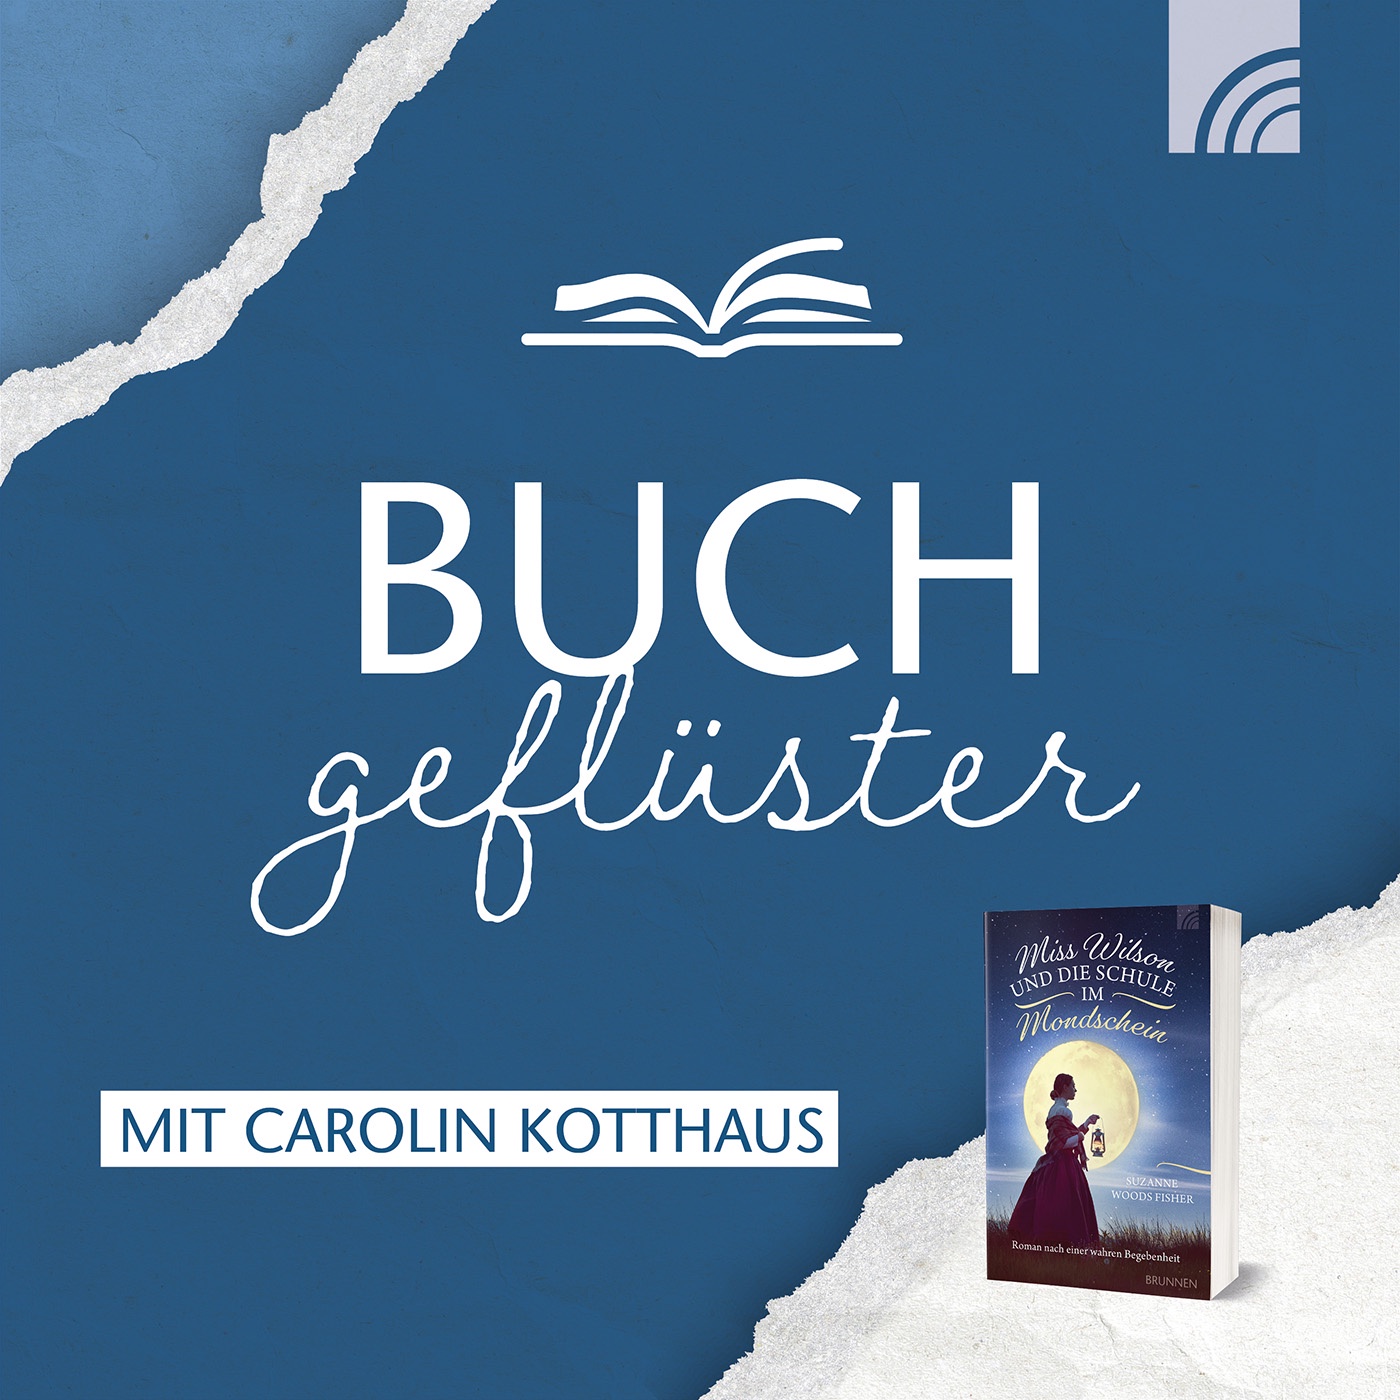 Buchgeflüster mit Carolin Kotthaus: Roman über Liebe, Heilung & Berufung – inspiriert von einer wahren Begebenheit